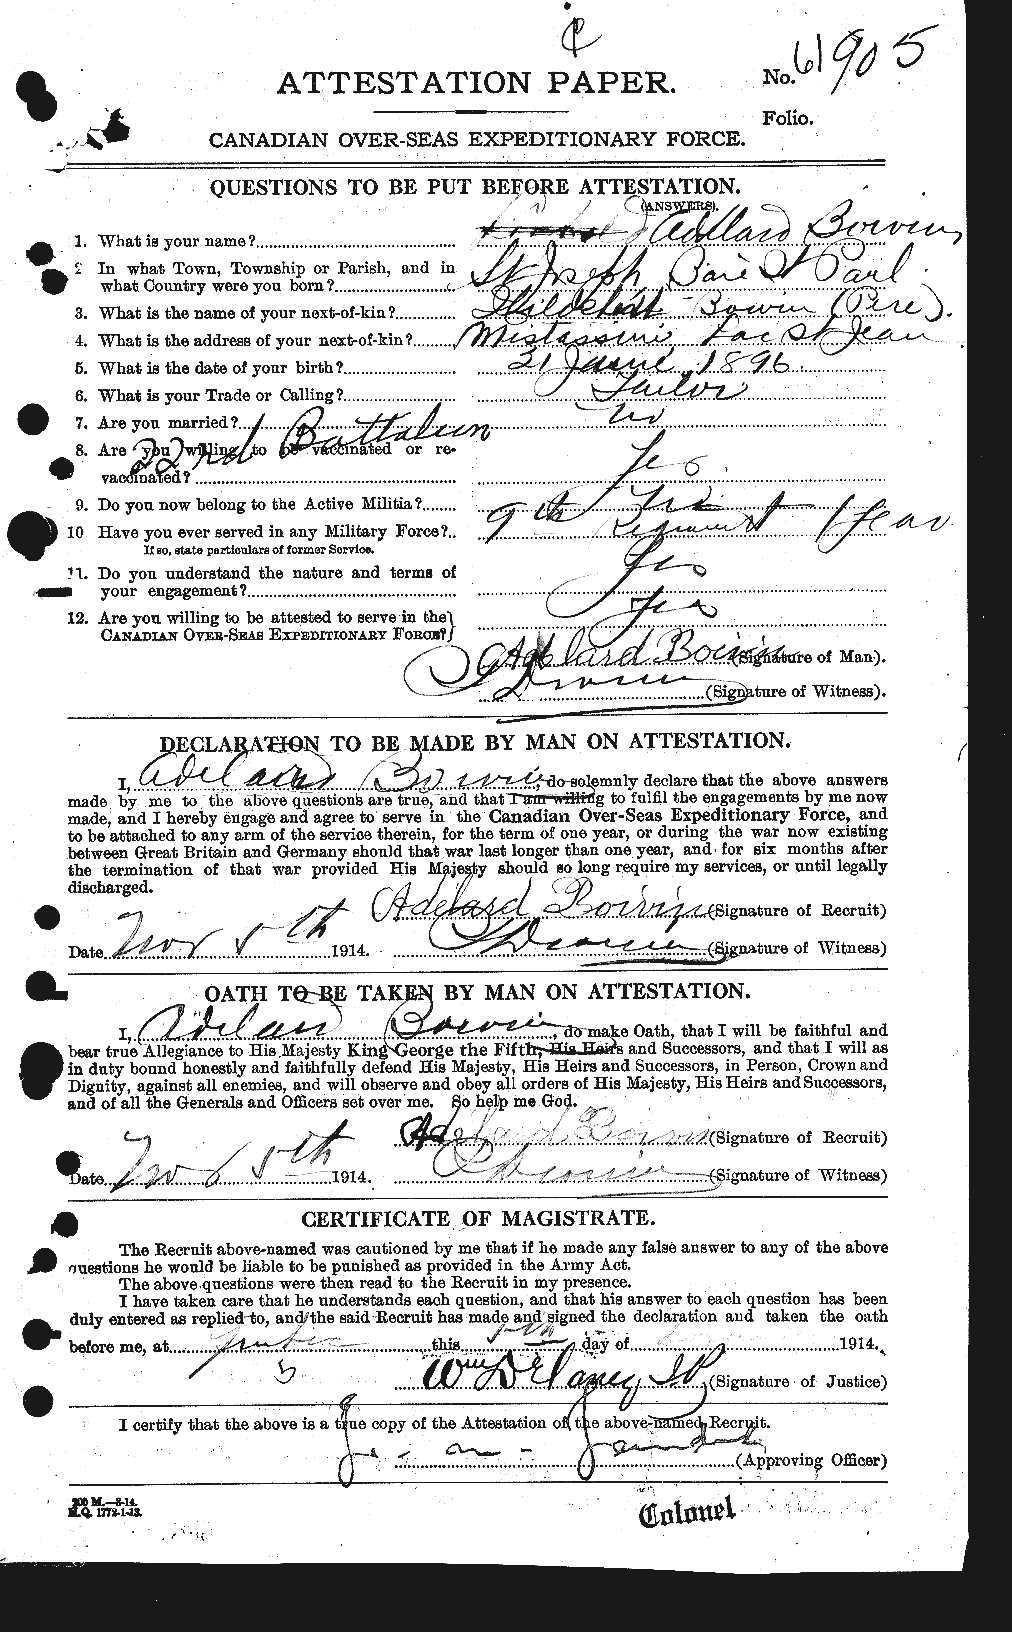 Dossiers du Personnel de la Première Guerre mondiale - CEC 249460a